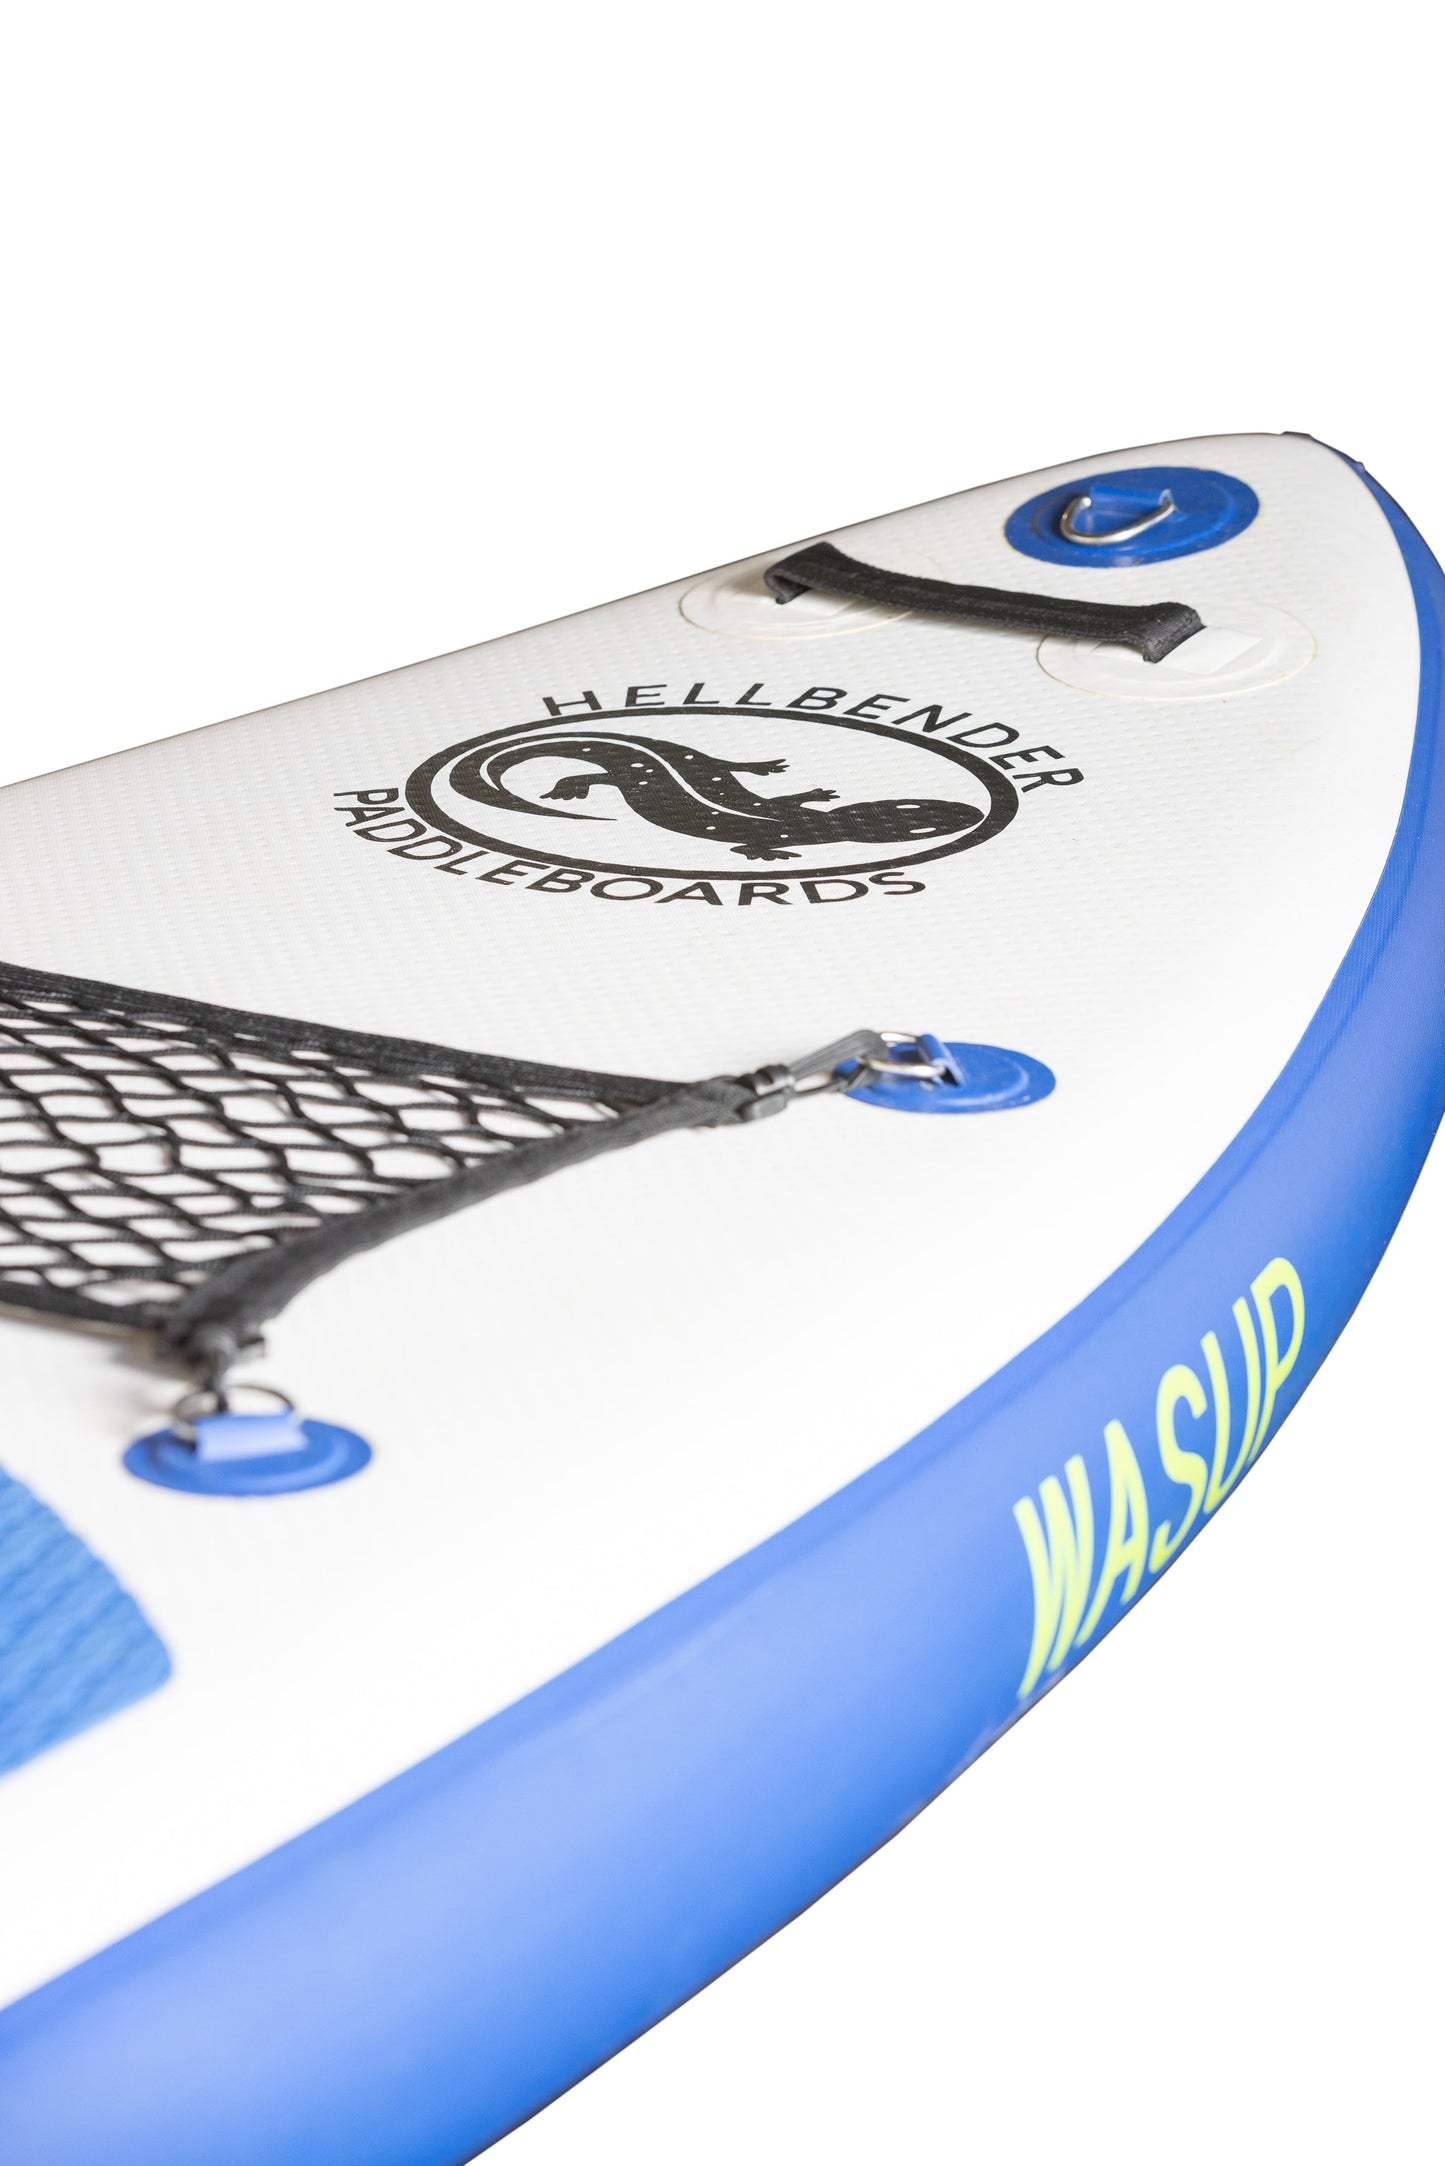 Wasup - Hellbender Paddleboards